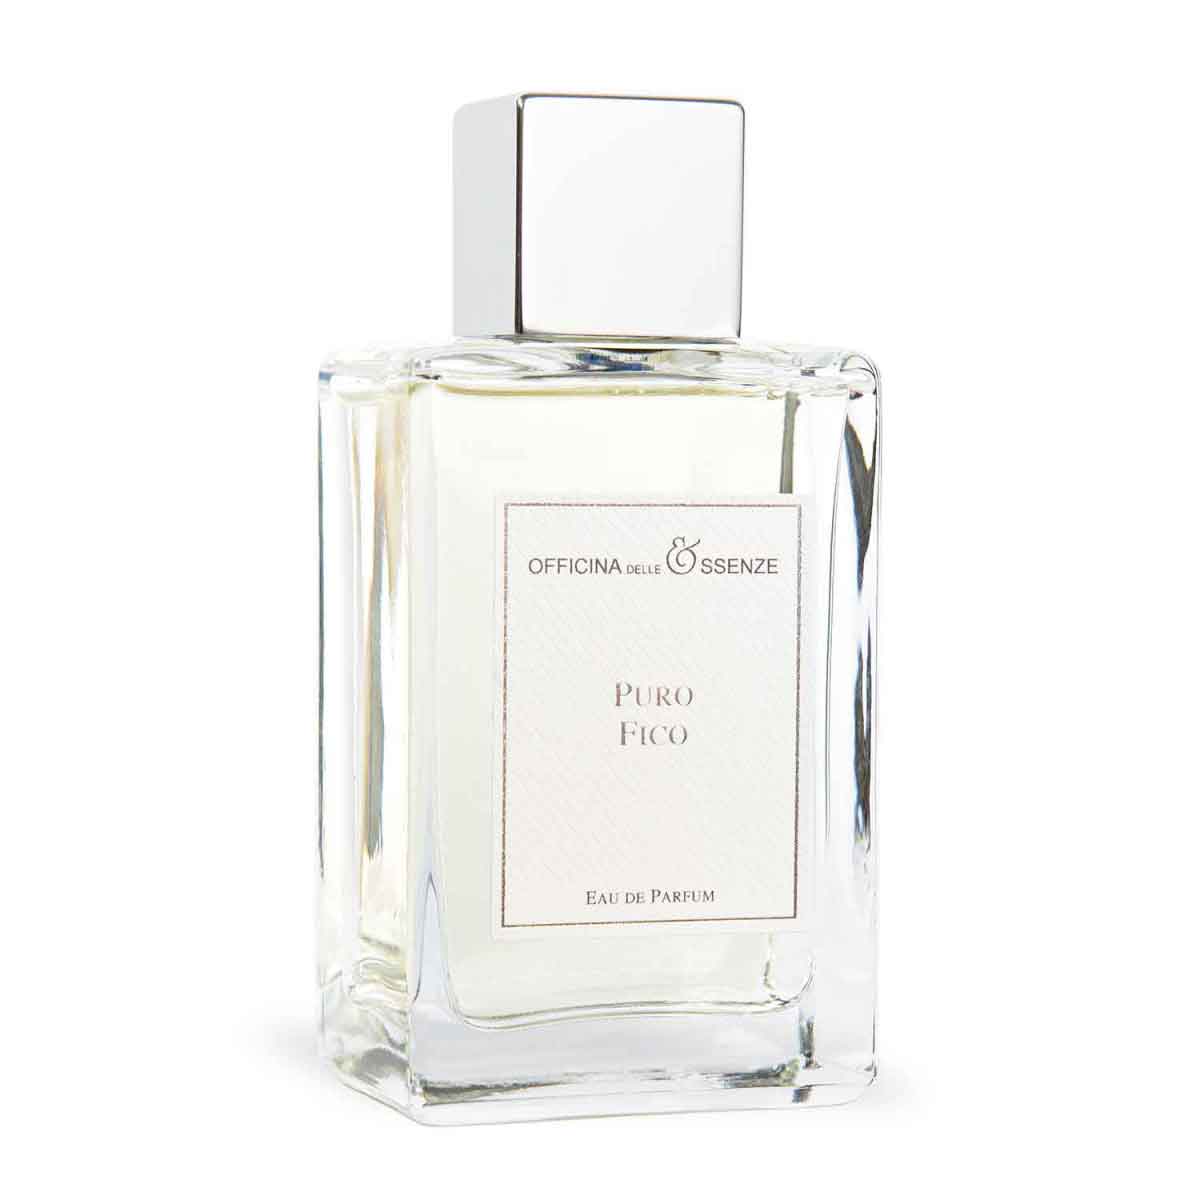 Puro Fico Eau de Parfum by Officina delle Essenze